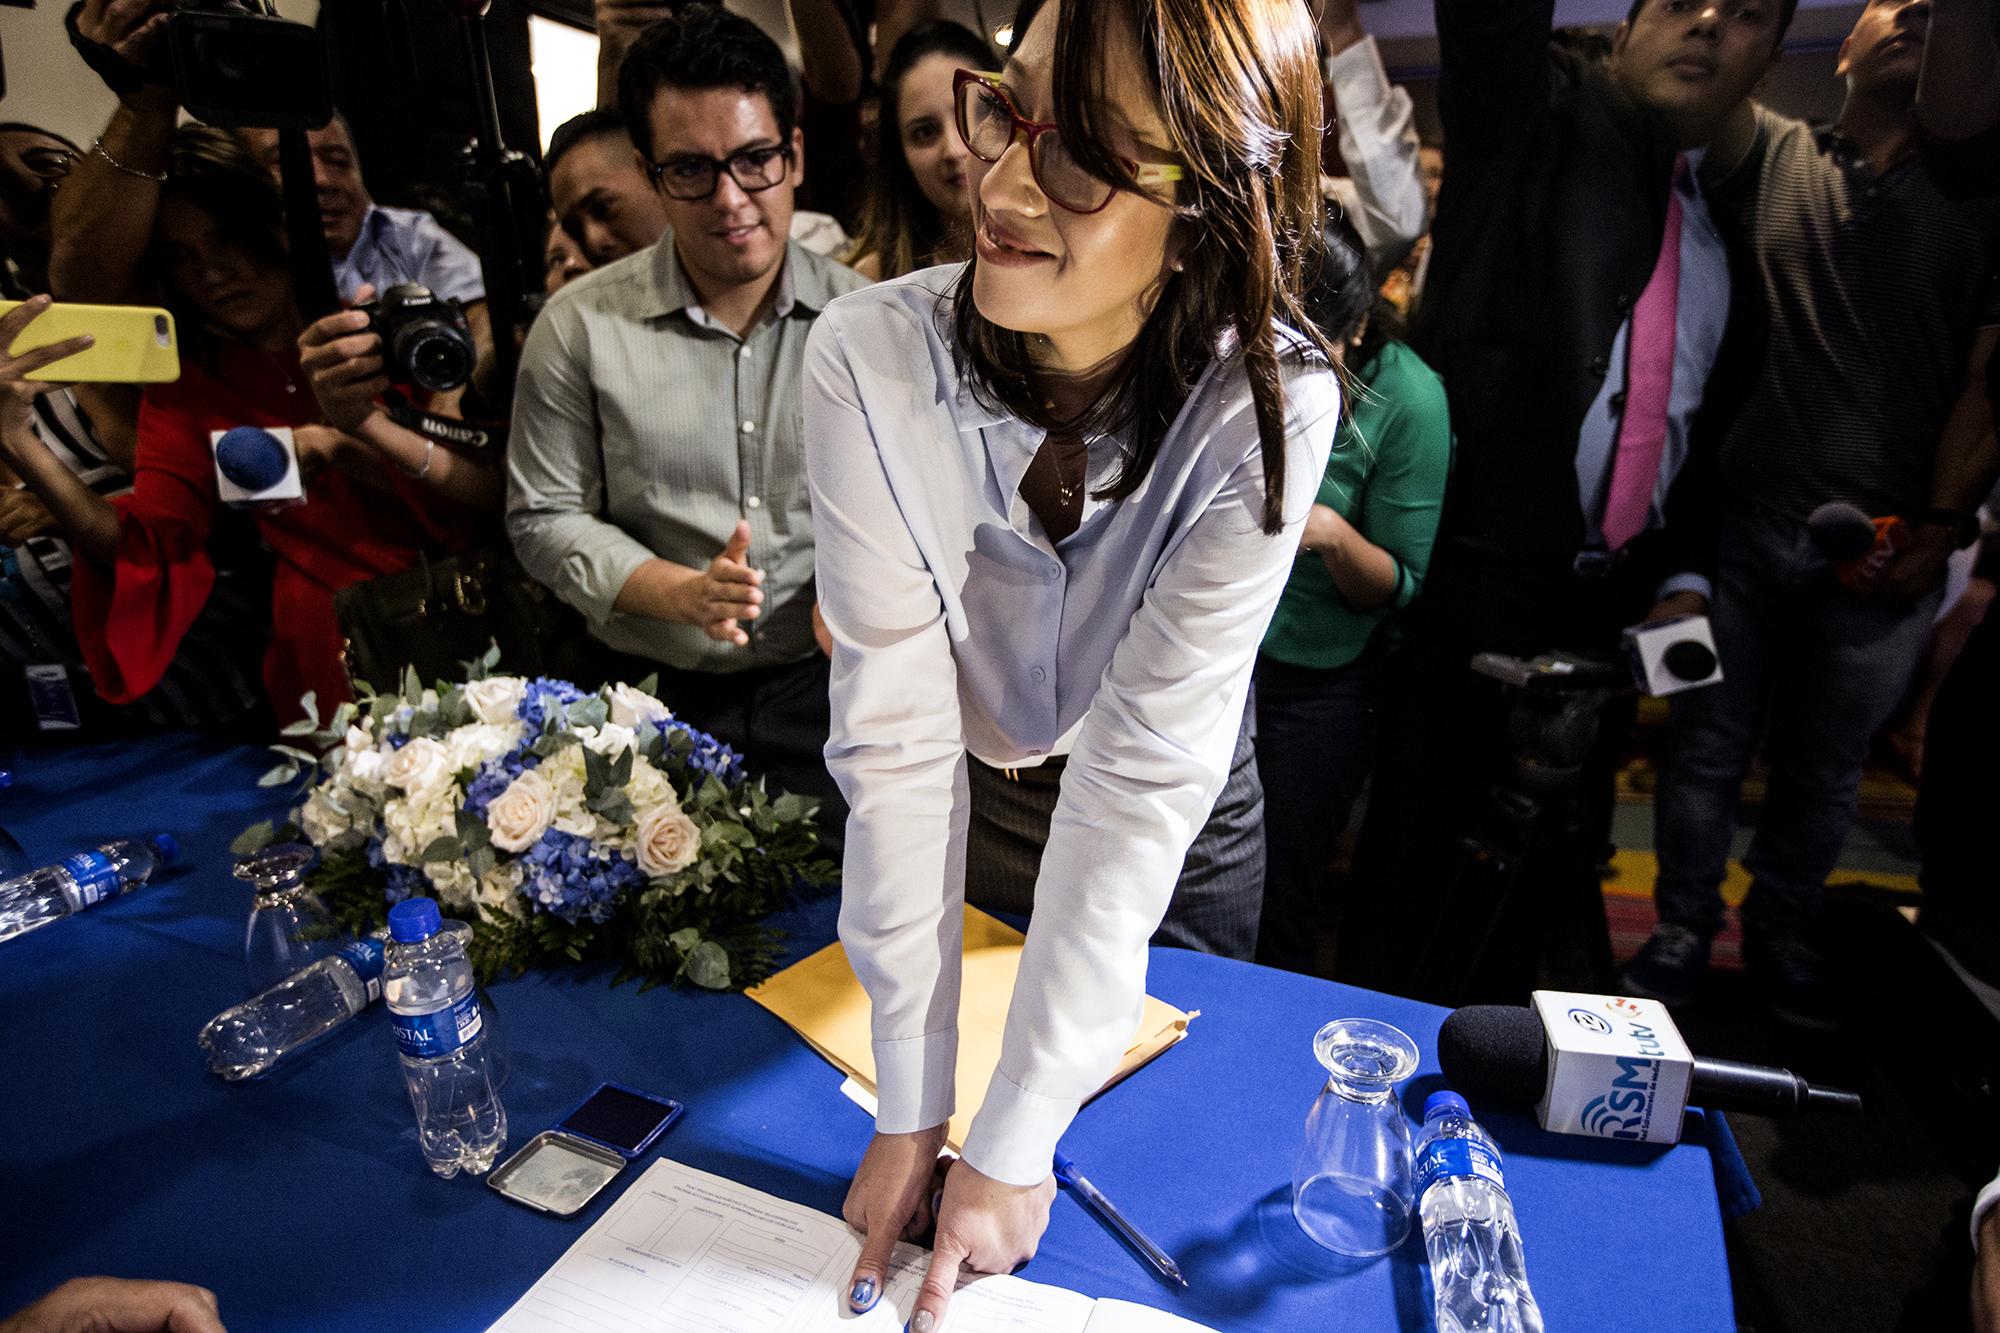 La economista Carmen Aída Lazo se inscribió en el PCN para participar en las elecciones presidenciales del 2019 como candidata a vicepresidente en la coalición ARENA, PCN, DS y PDC. Foto Fred Ramos.